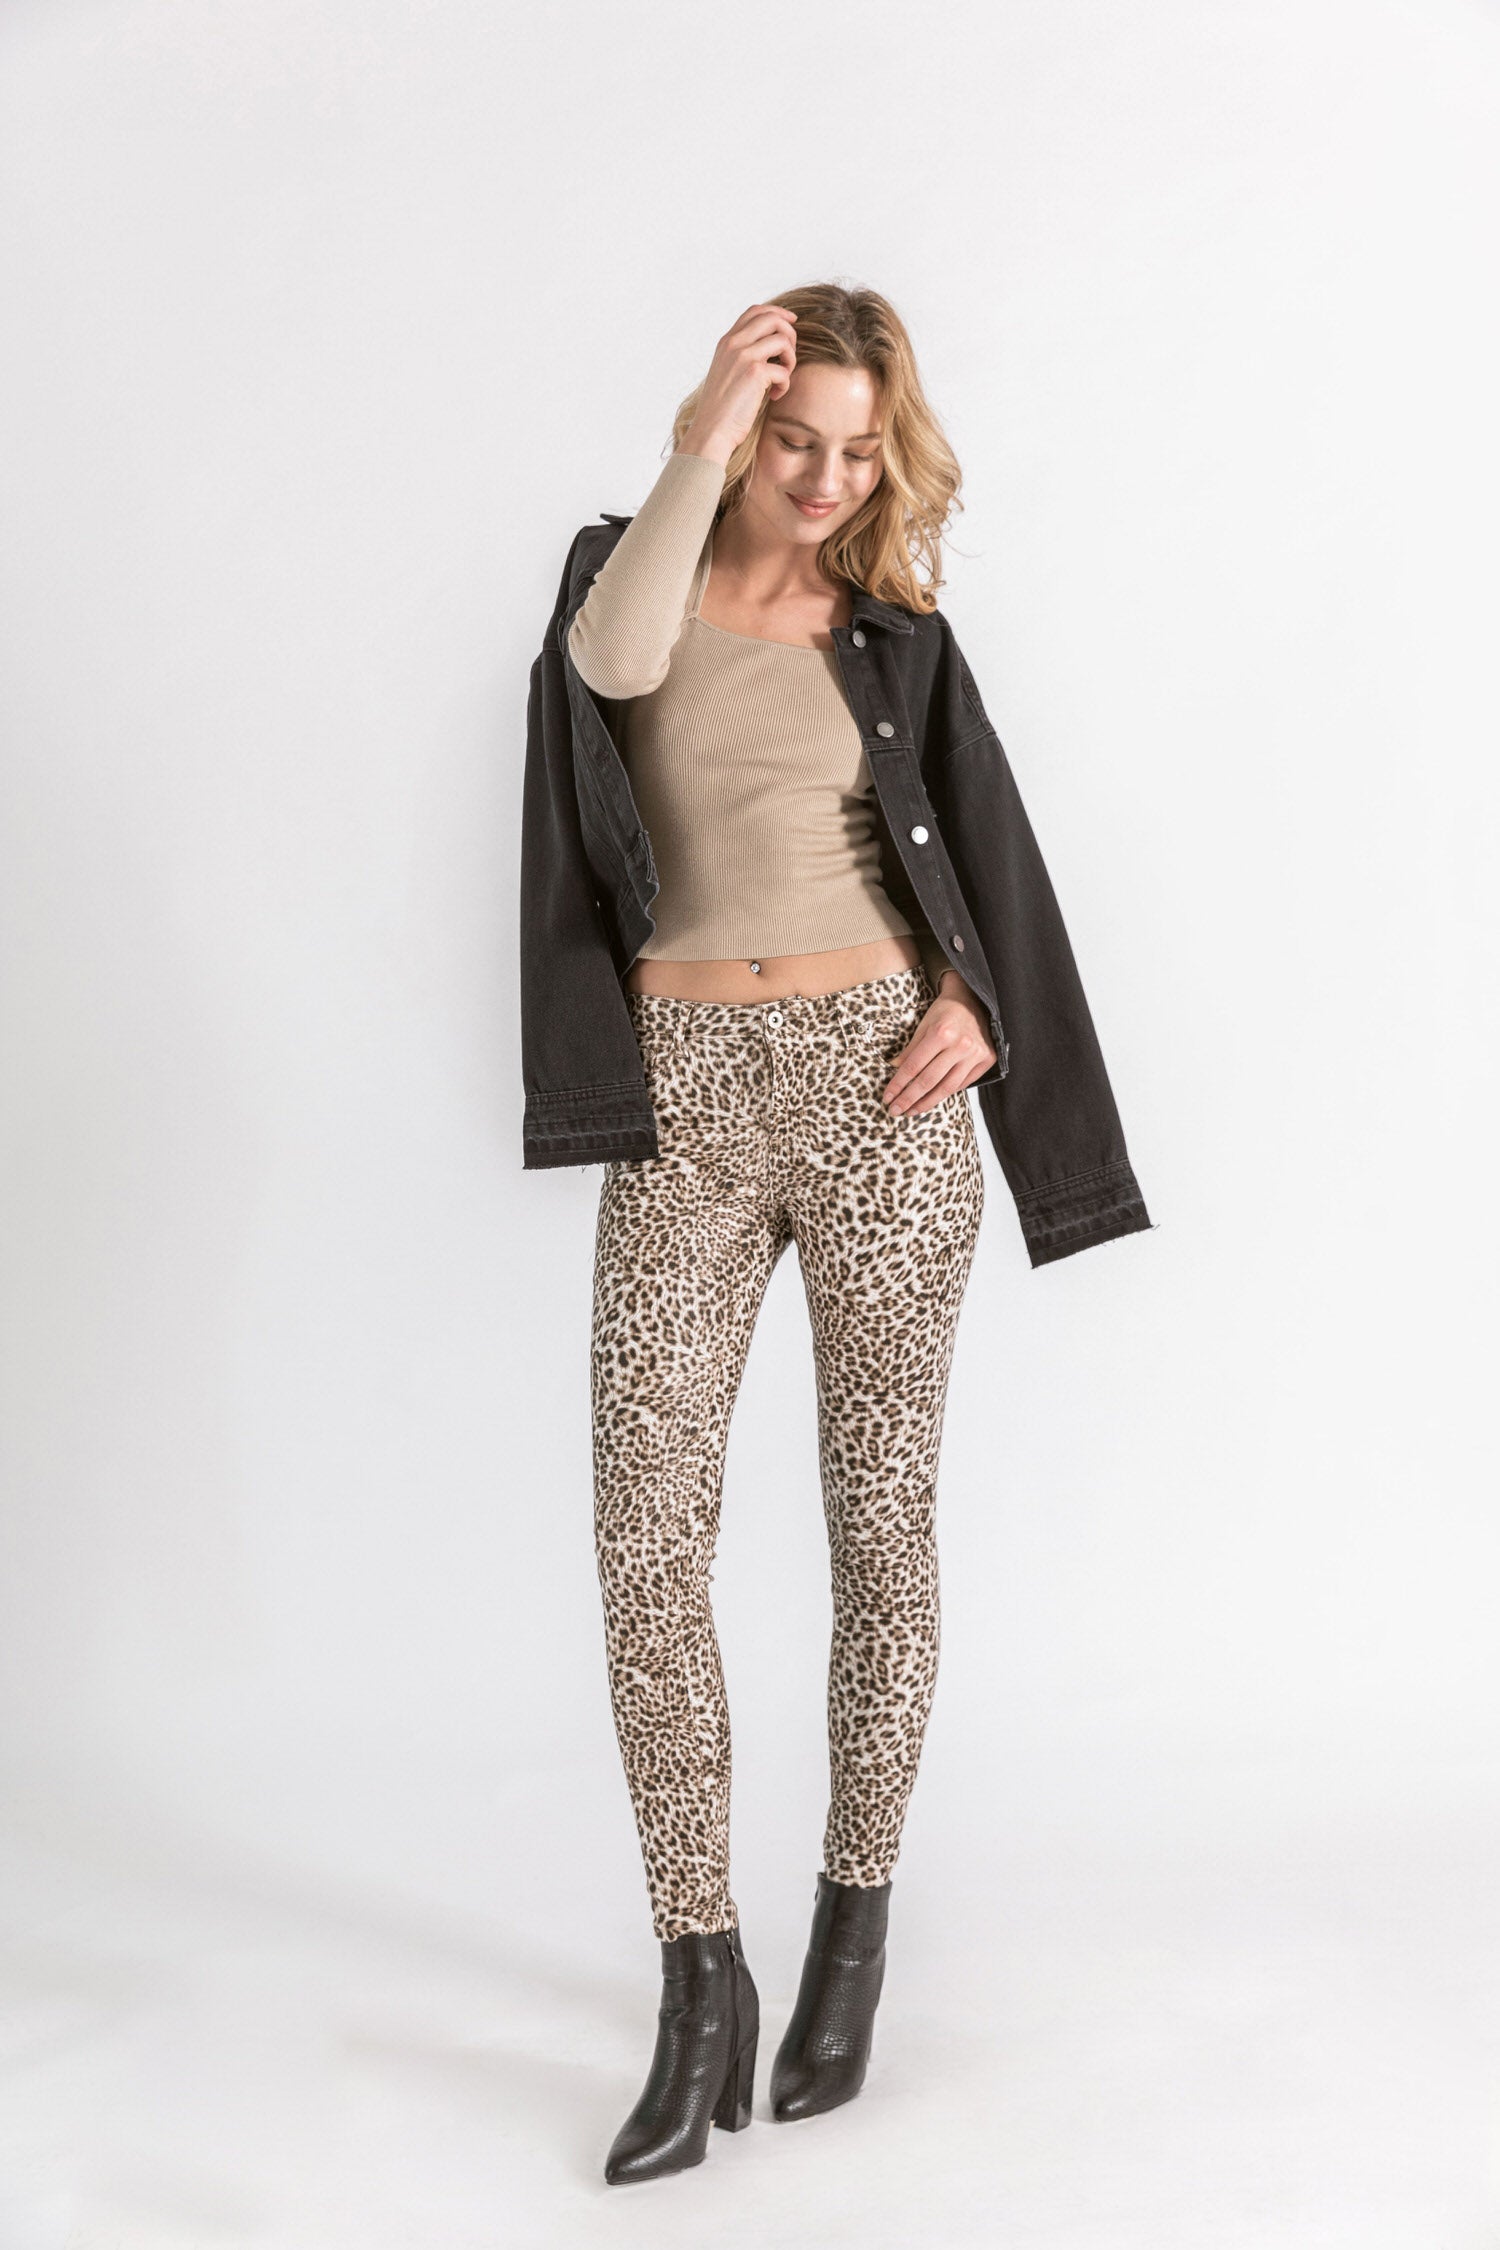 Pantalon enduit imprimé léopard - Loula